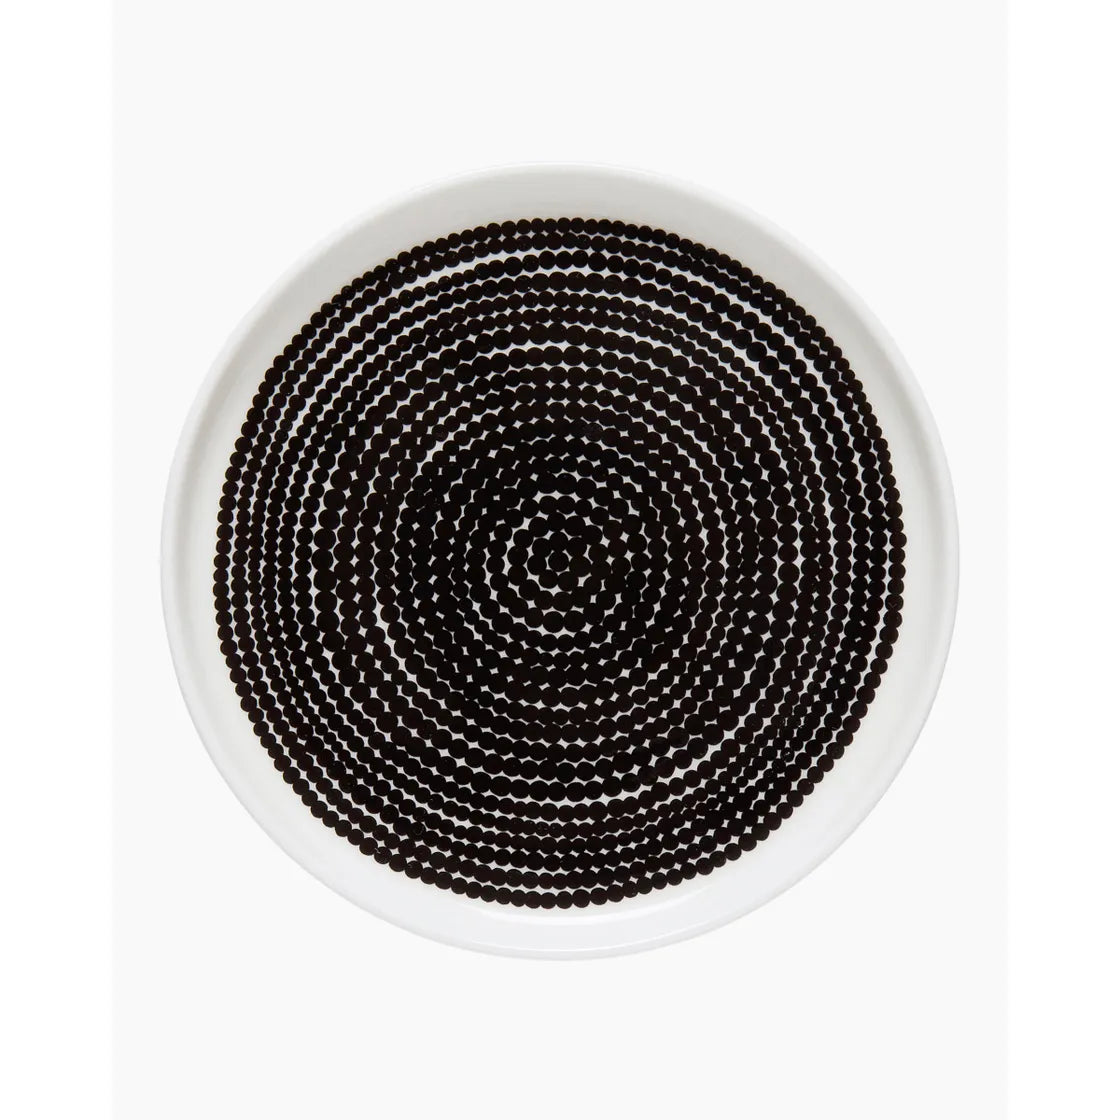 Oiva / Siirtolapuutarha plate 13,5 cm white / black 069071 190